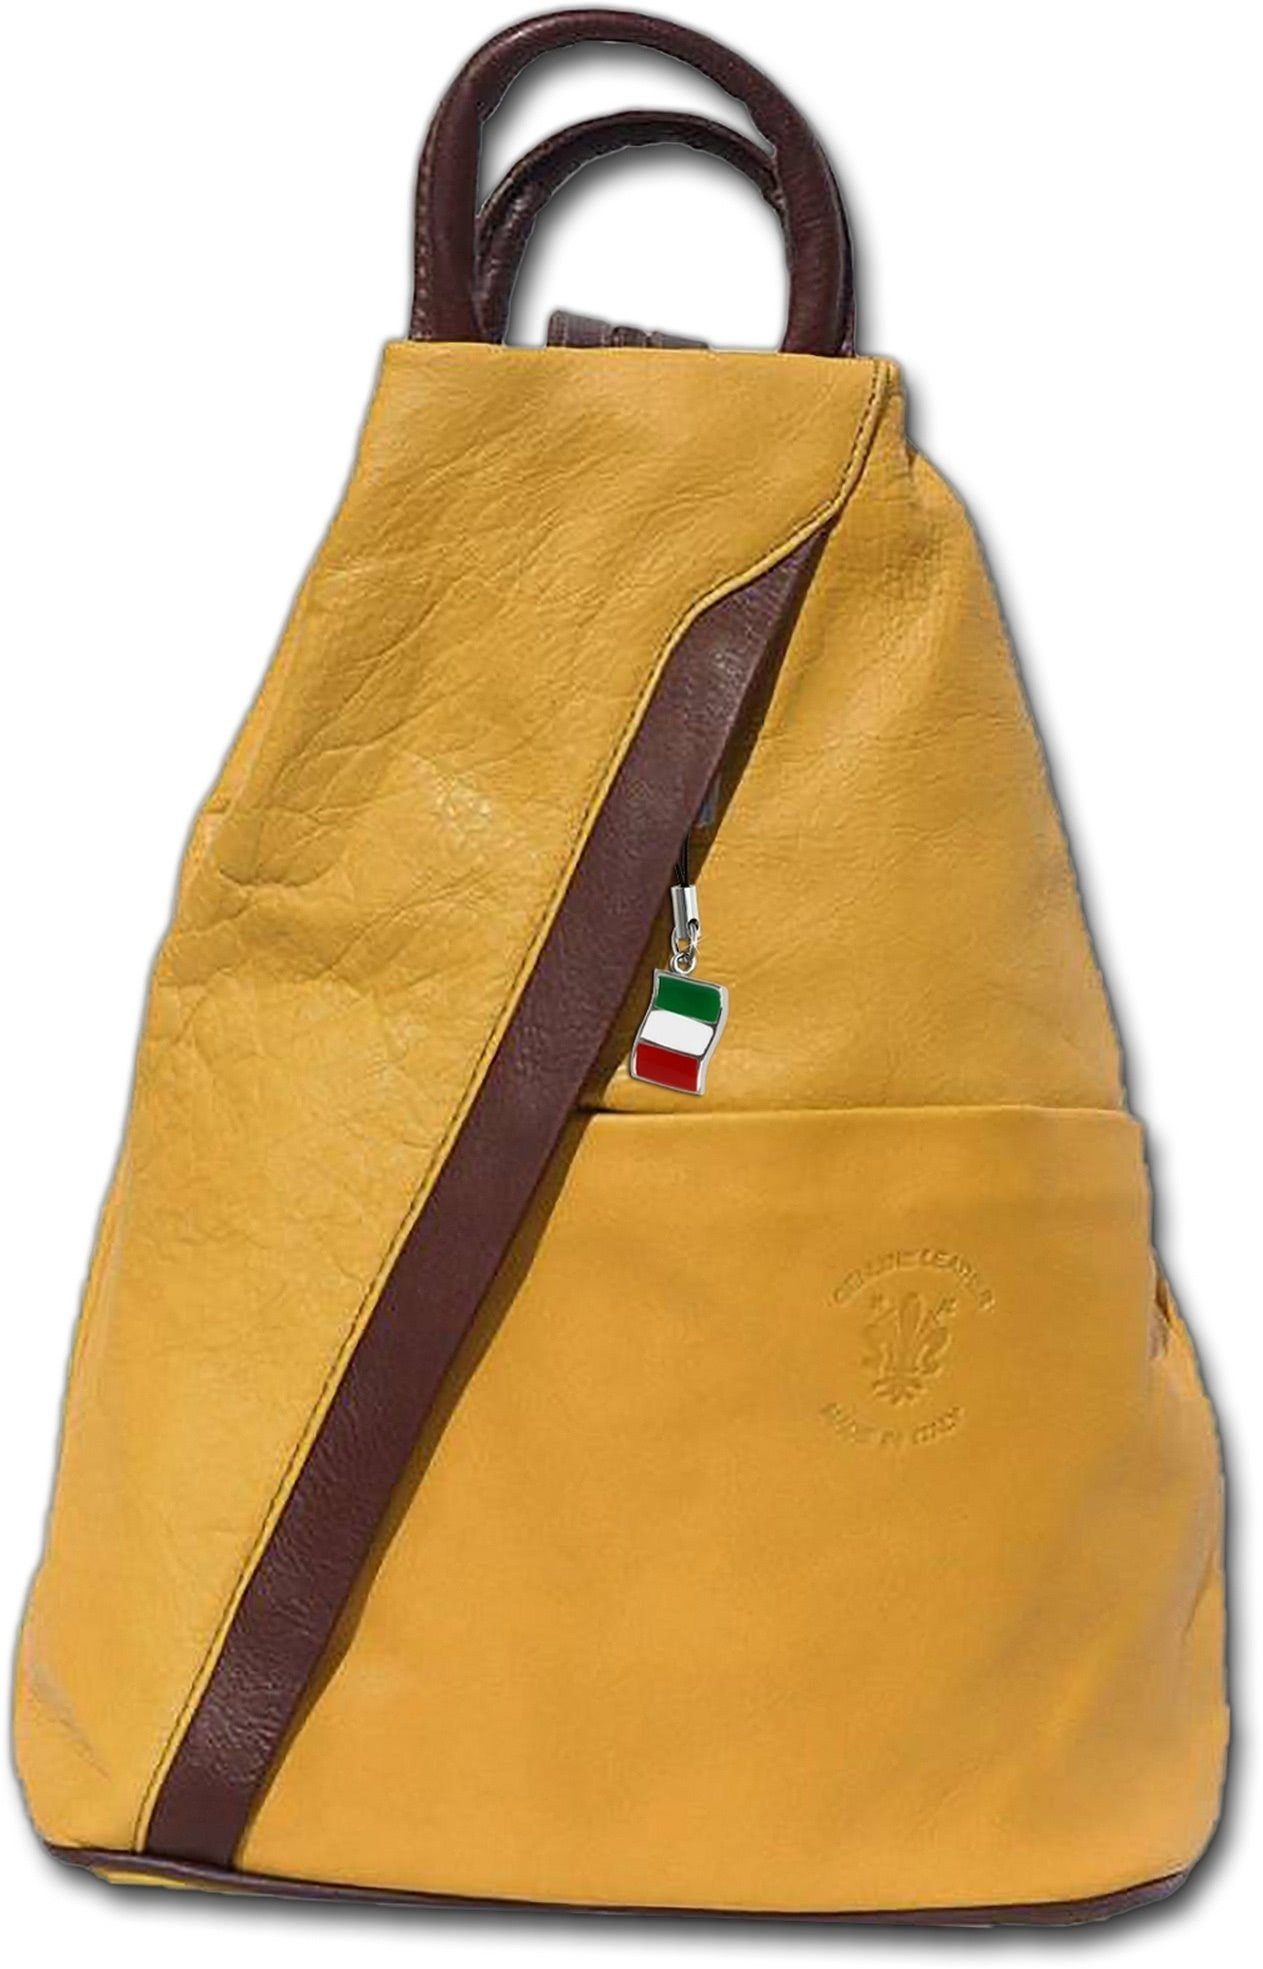 FLORENCE Cityrucksack Florence Damen Tasche Echtleder gelb  (Schultertasche), Damen Rucksack Echtleder gelb, braun, Made-In Italy